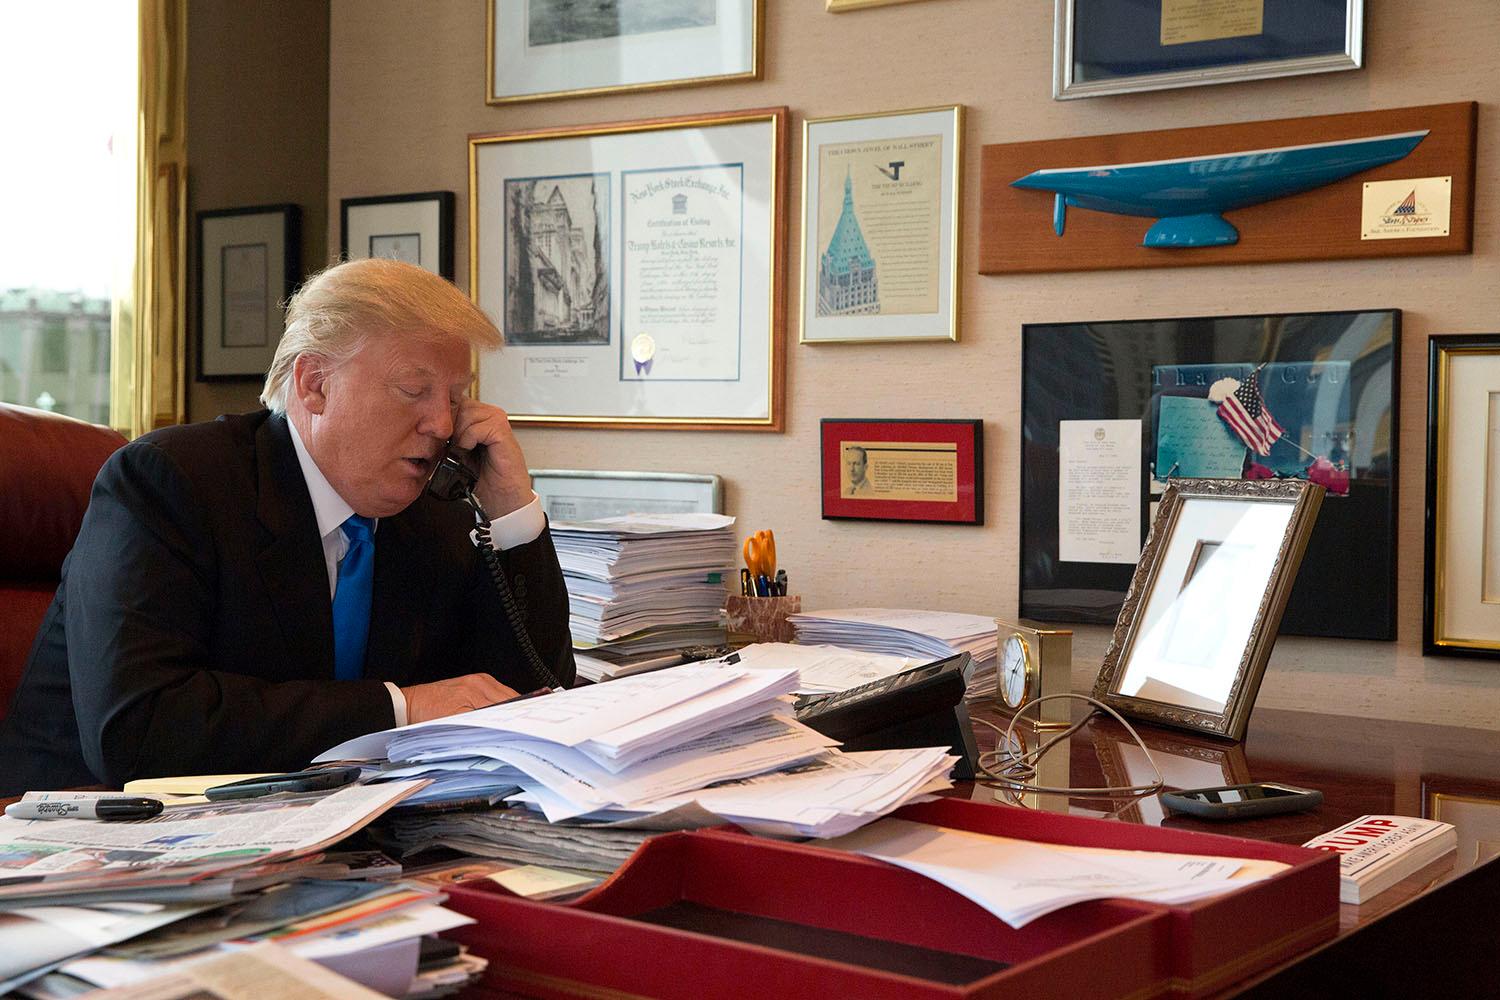 Trump telefonerar i en arkivbild. Enligt bildinformationen pratar han med sin dotter Ivanka från kontoret i Trump tower.